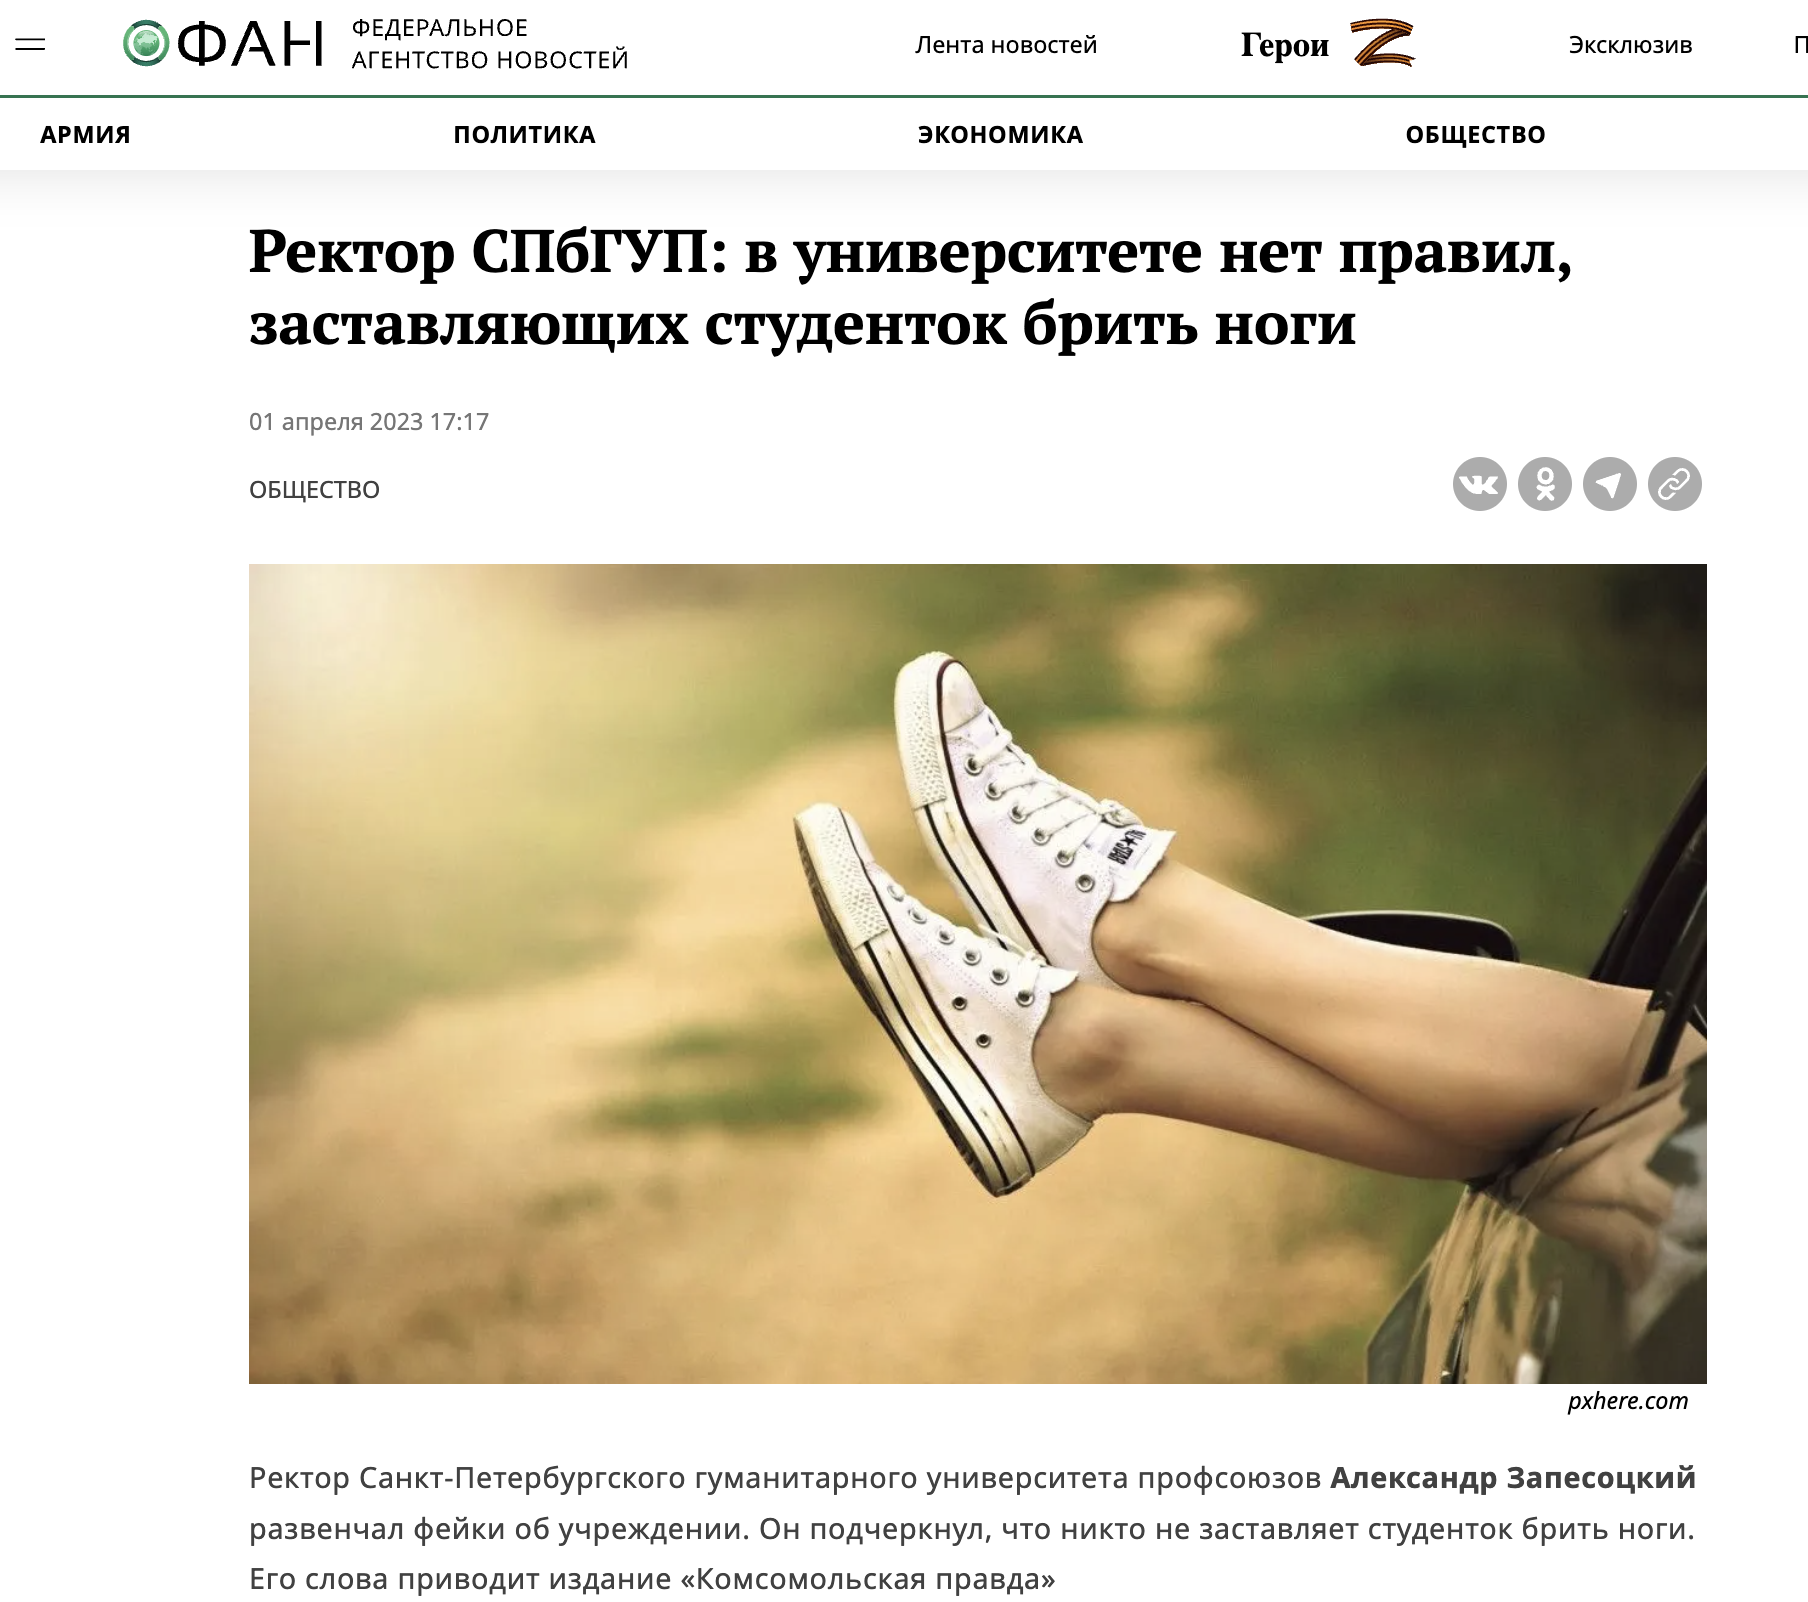 Студенткам петербургского вуза запретили посещать занятия с небритыми ногами